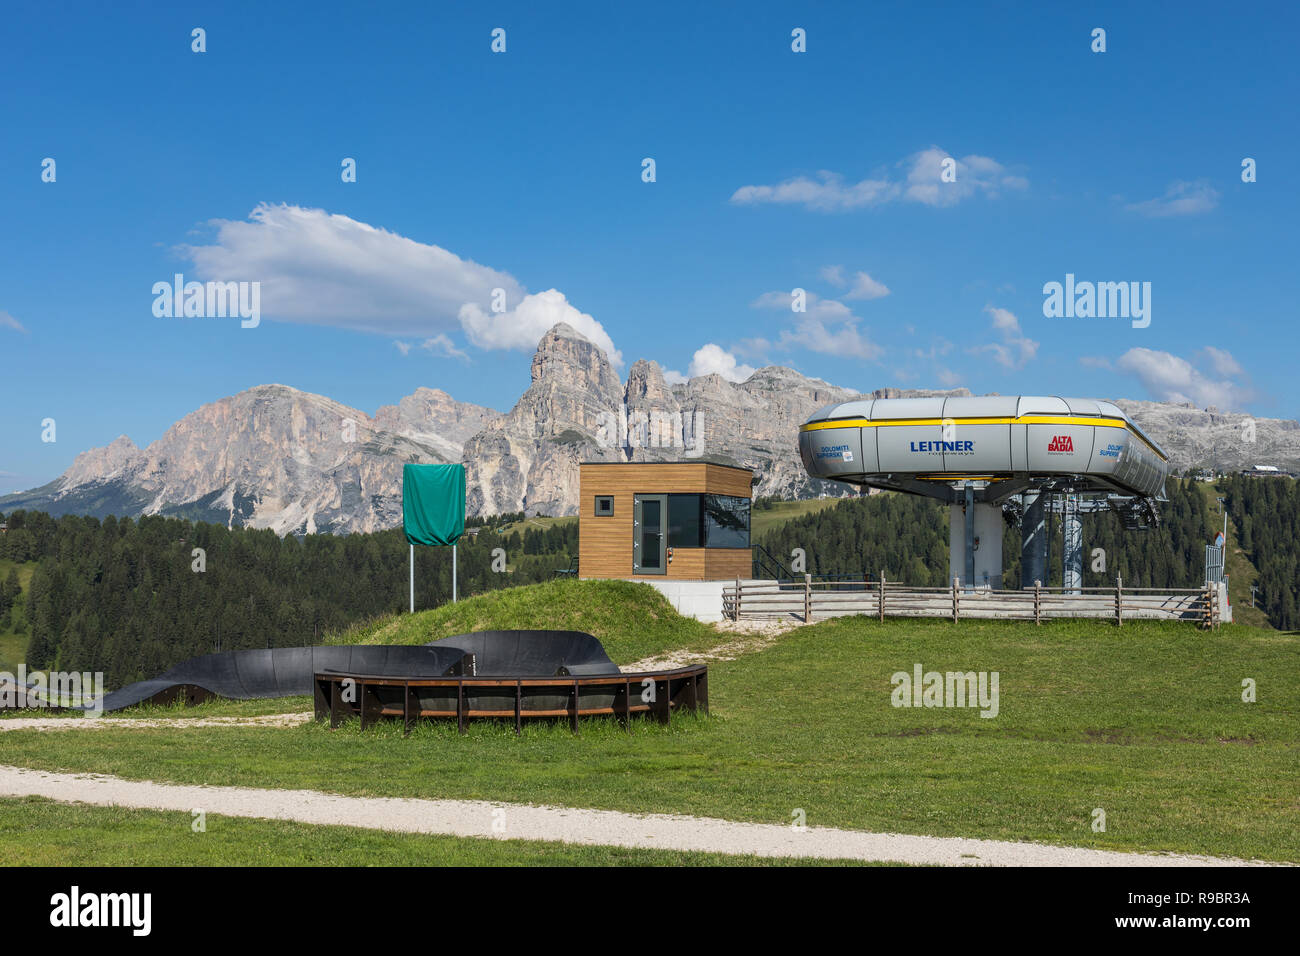 Stazione skilift immagini e fotografie stock ad alta risoluzione - Alamy